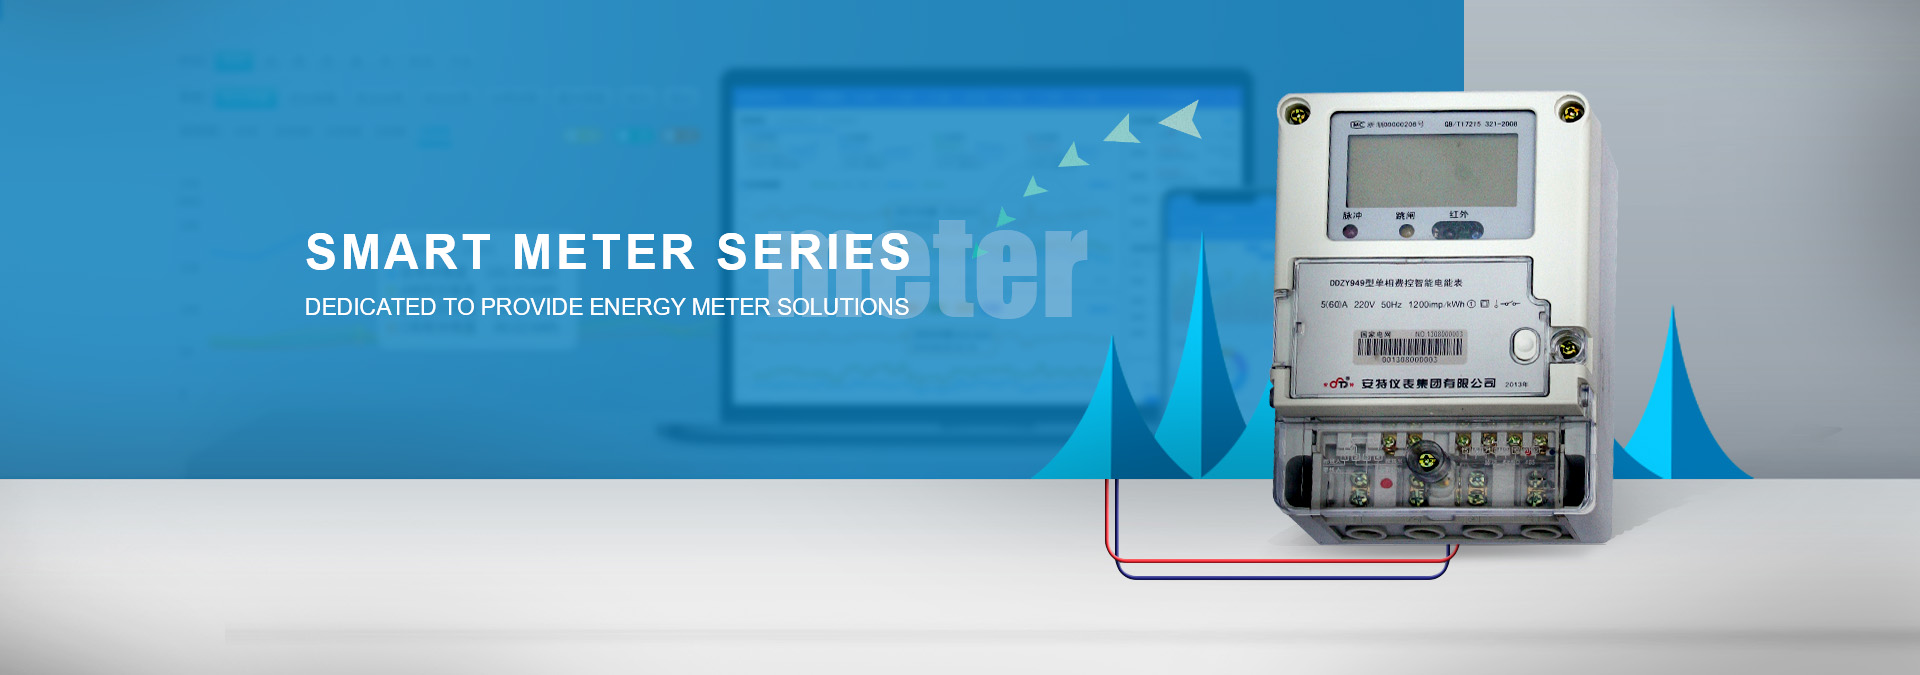 Smart Energy Meter Series